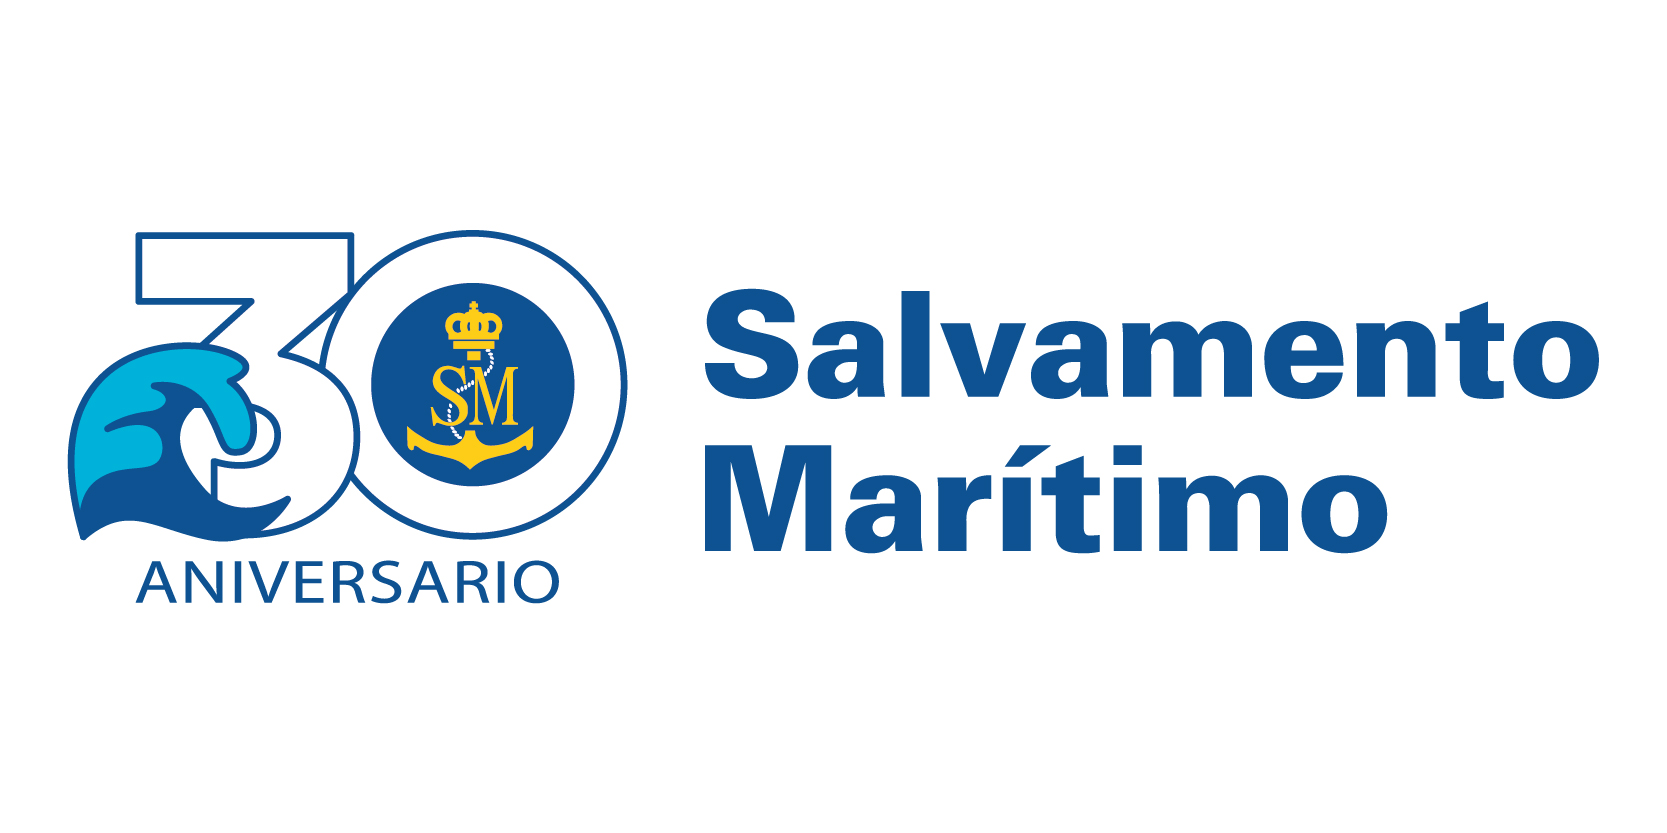 Logotipo 30 Aniversario Salvamento Marítimo